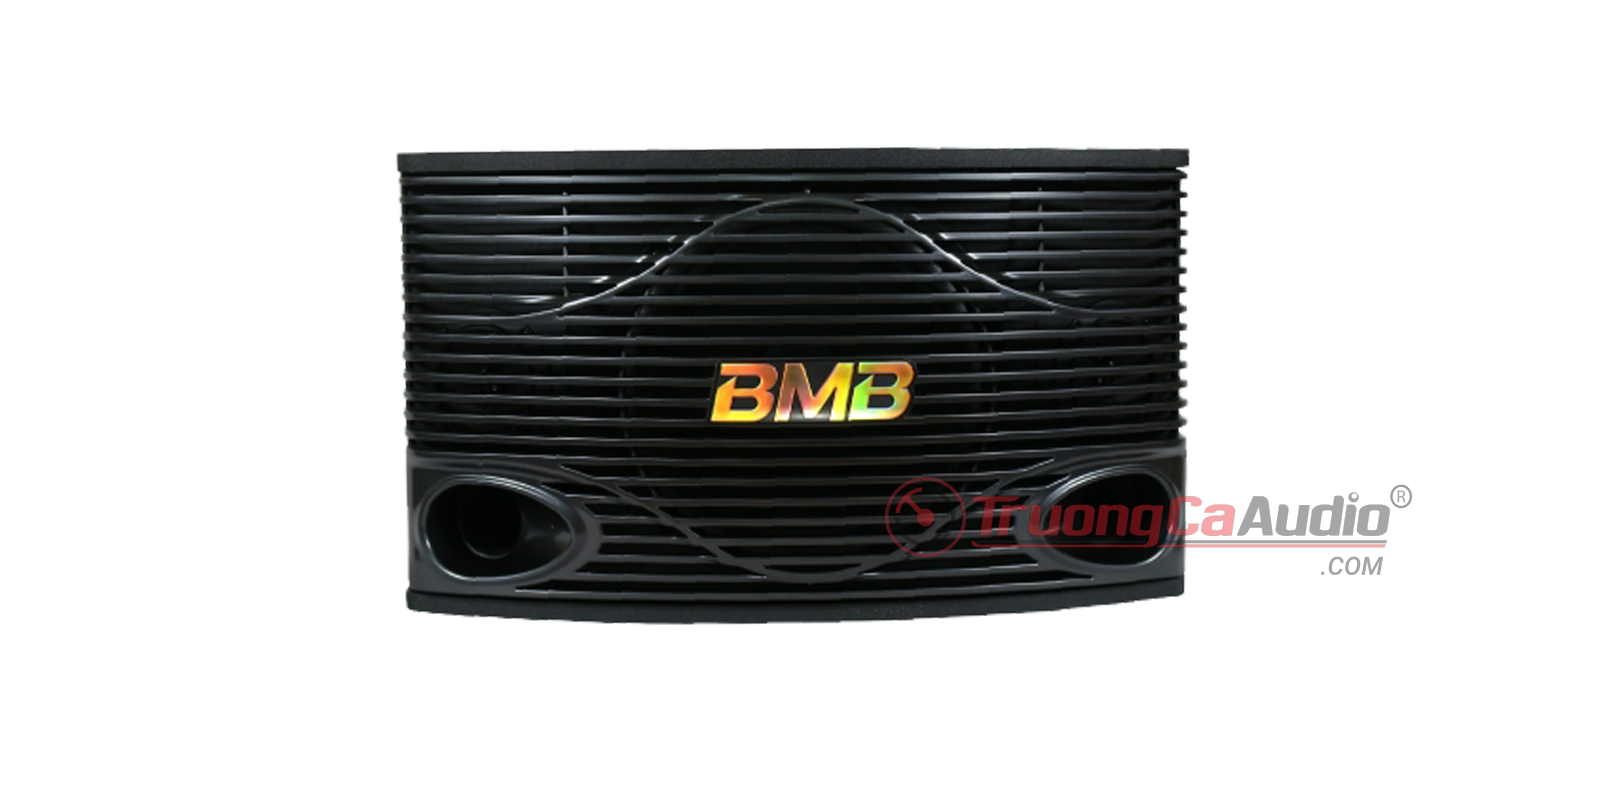 Loa BMB CSN 500SE là dòng loa karaoke cao cấp, phù hợp với nhiều dàn karaoke gia đình